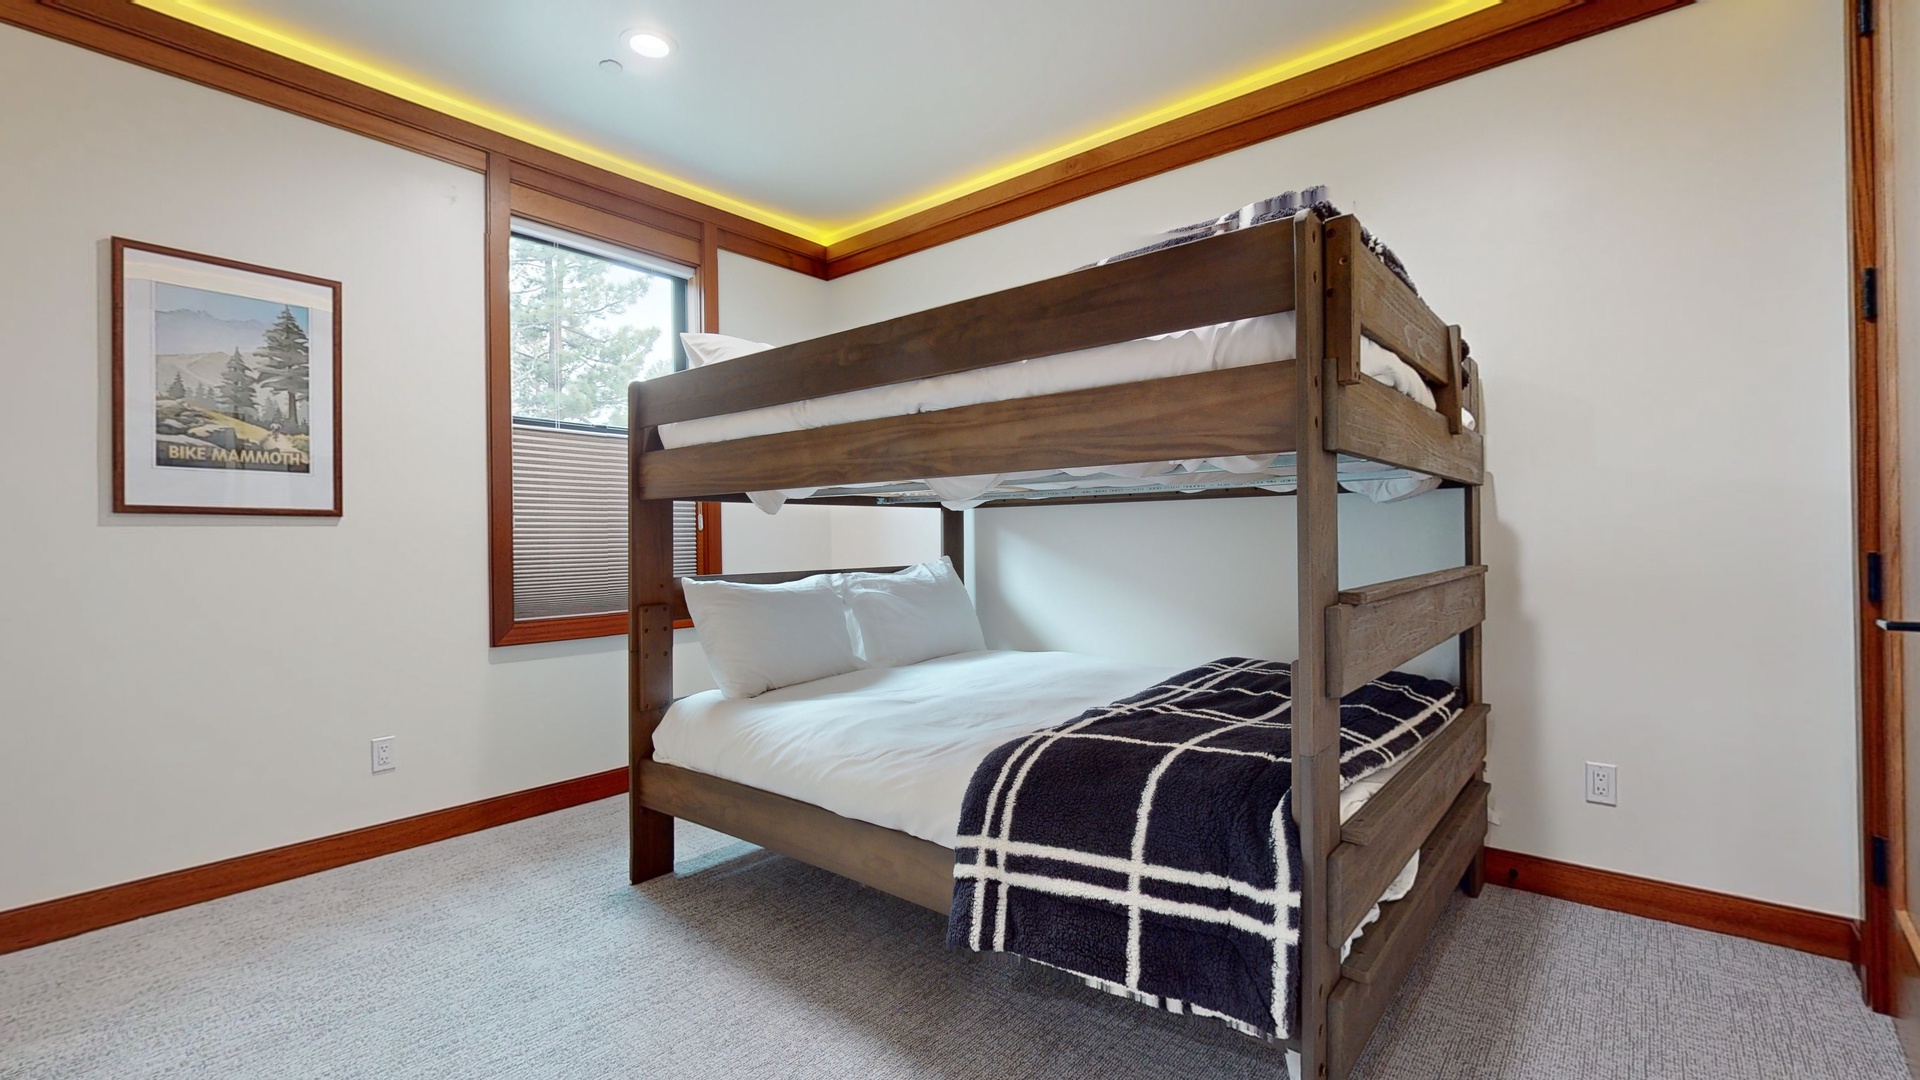 Bedroom 2 with Queen/Queen bunk bed, and Smart TV